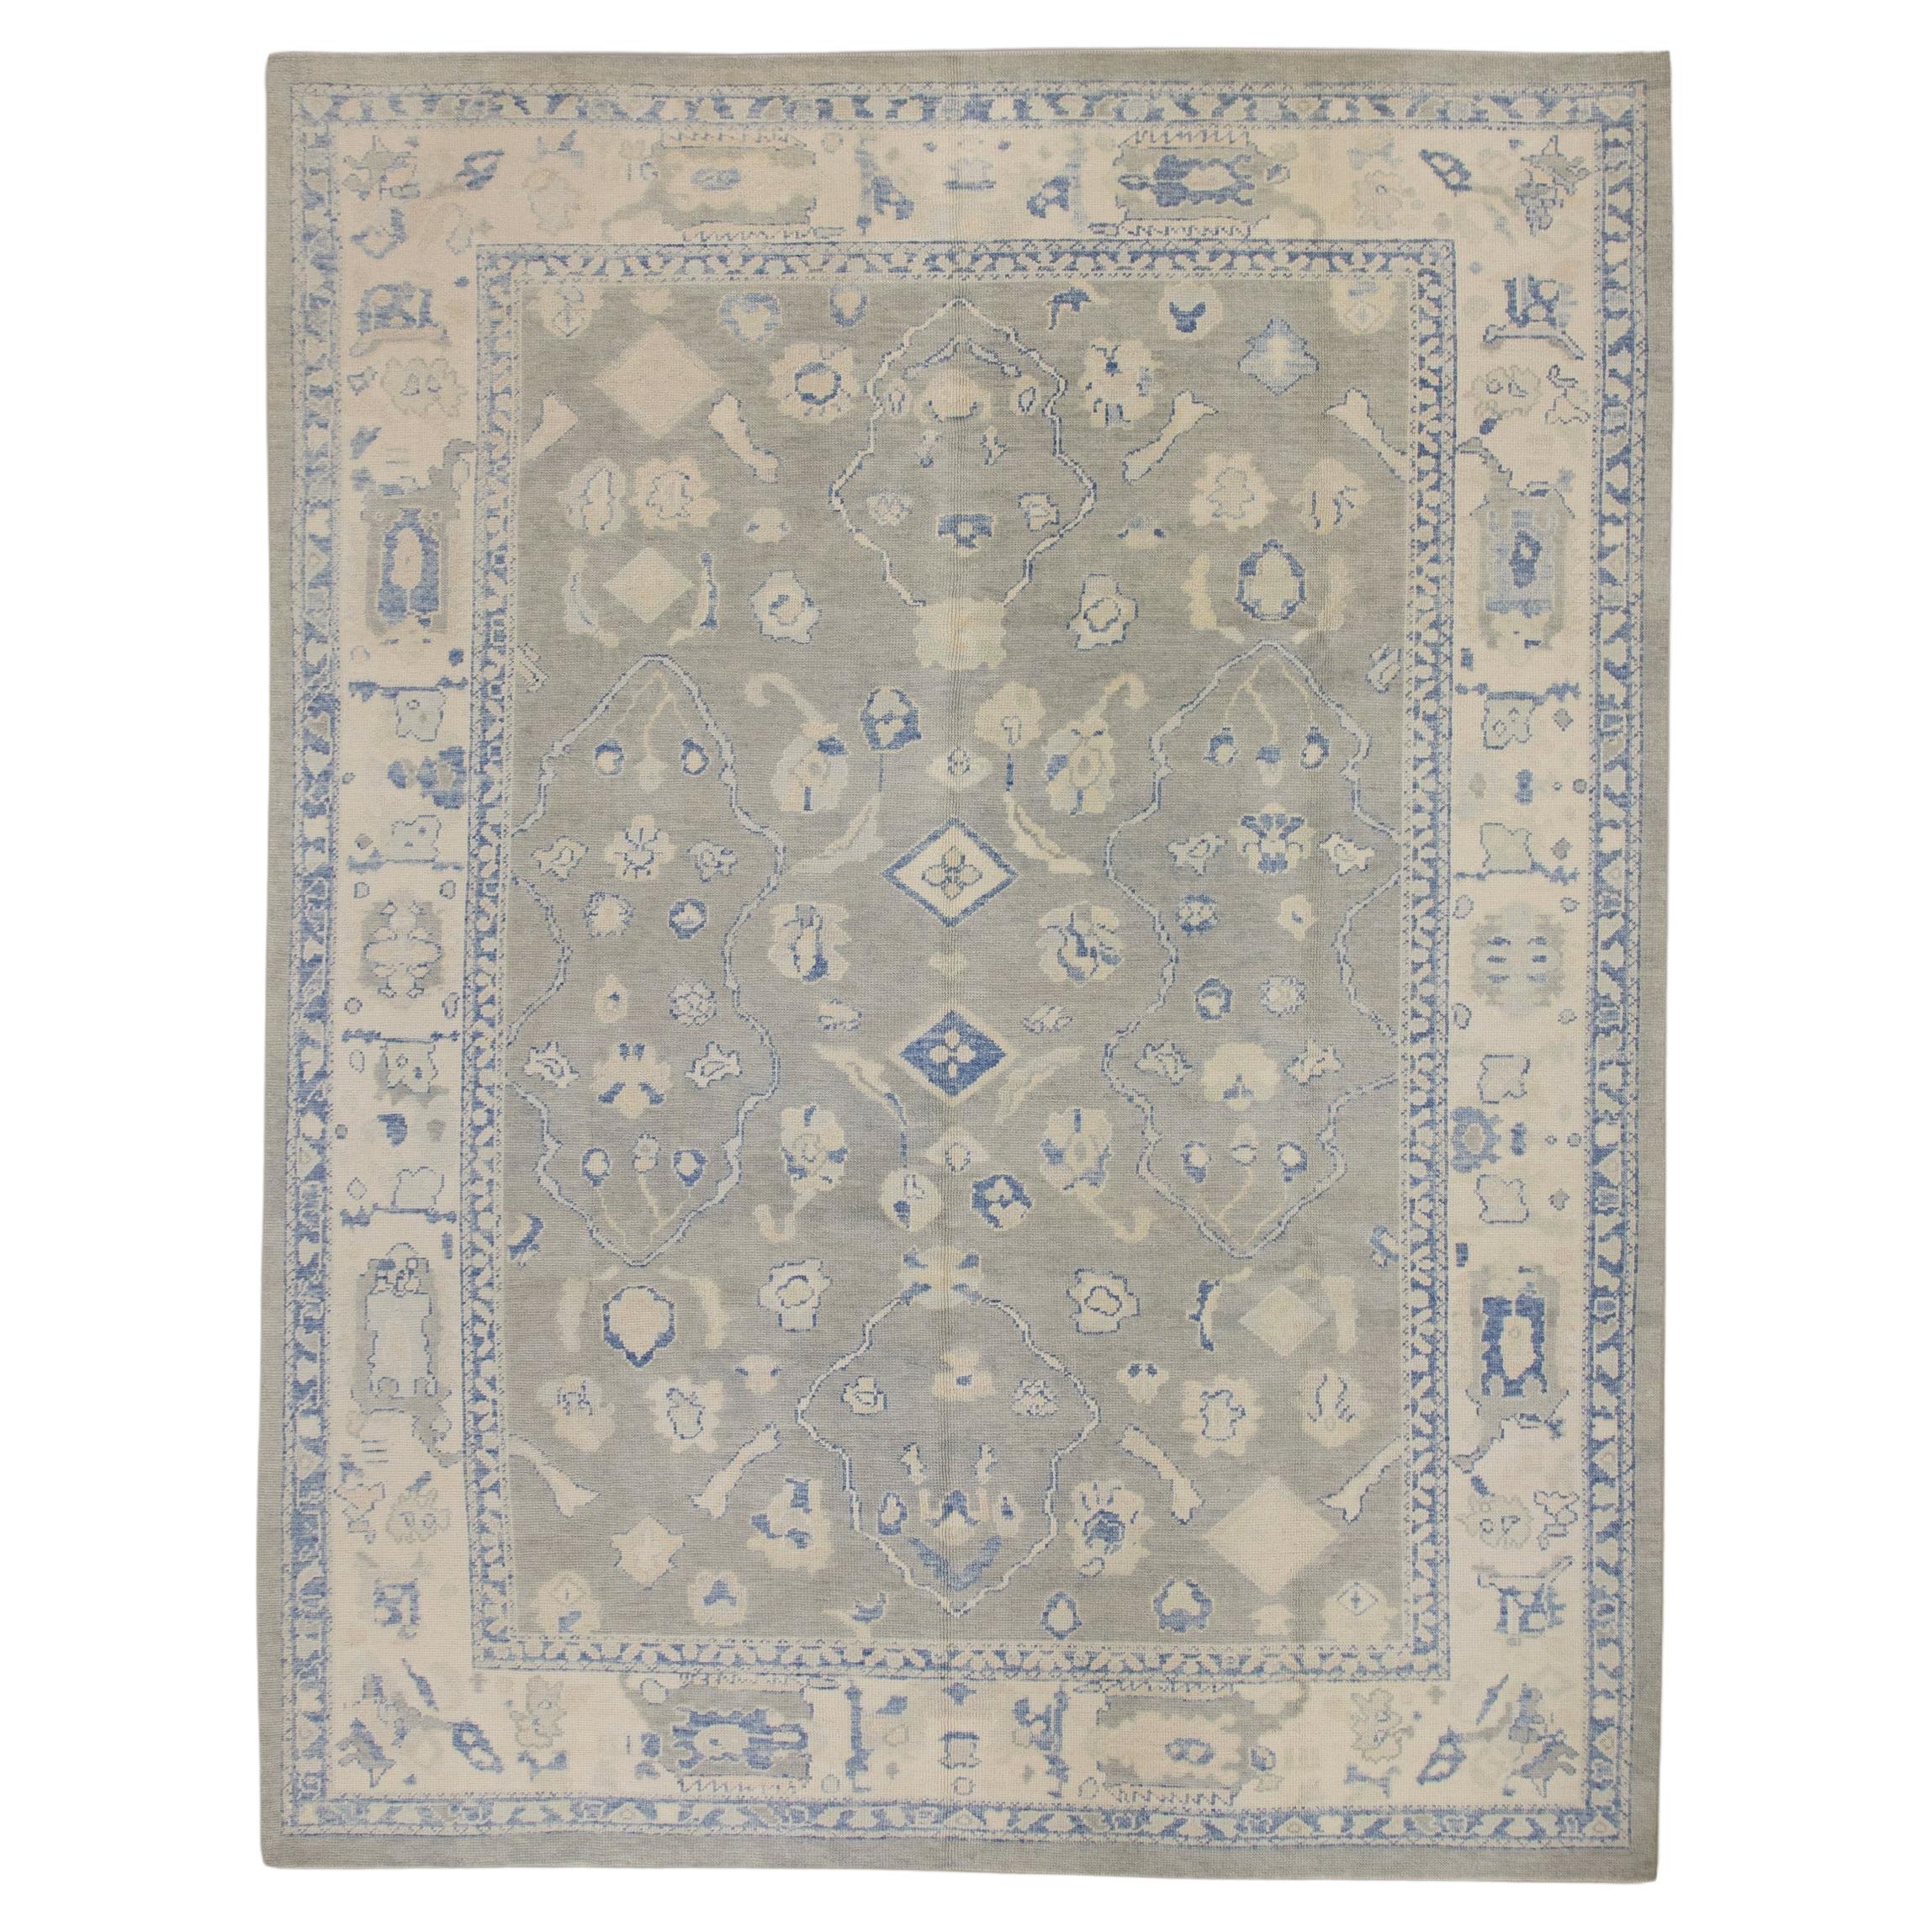 Orientalischer handgeknüpfter türkischer Oushak-Teppich  9'3" x 12'1" #7219